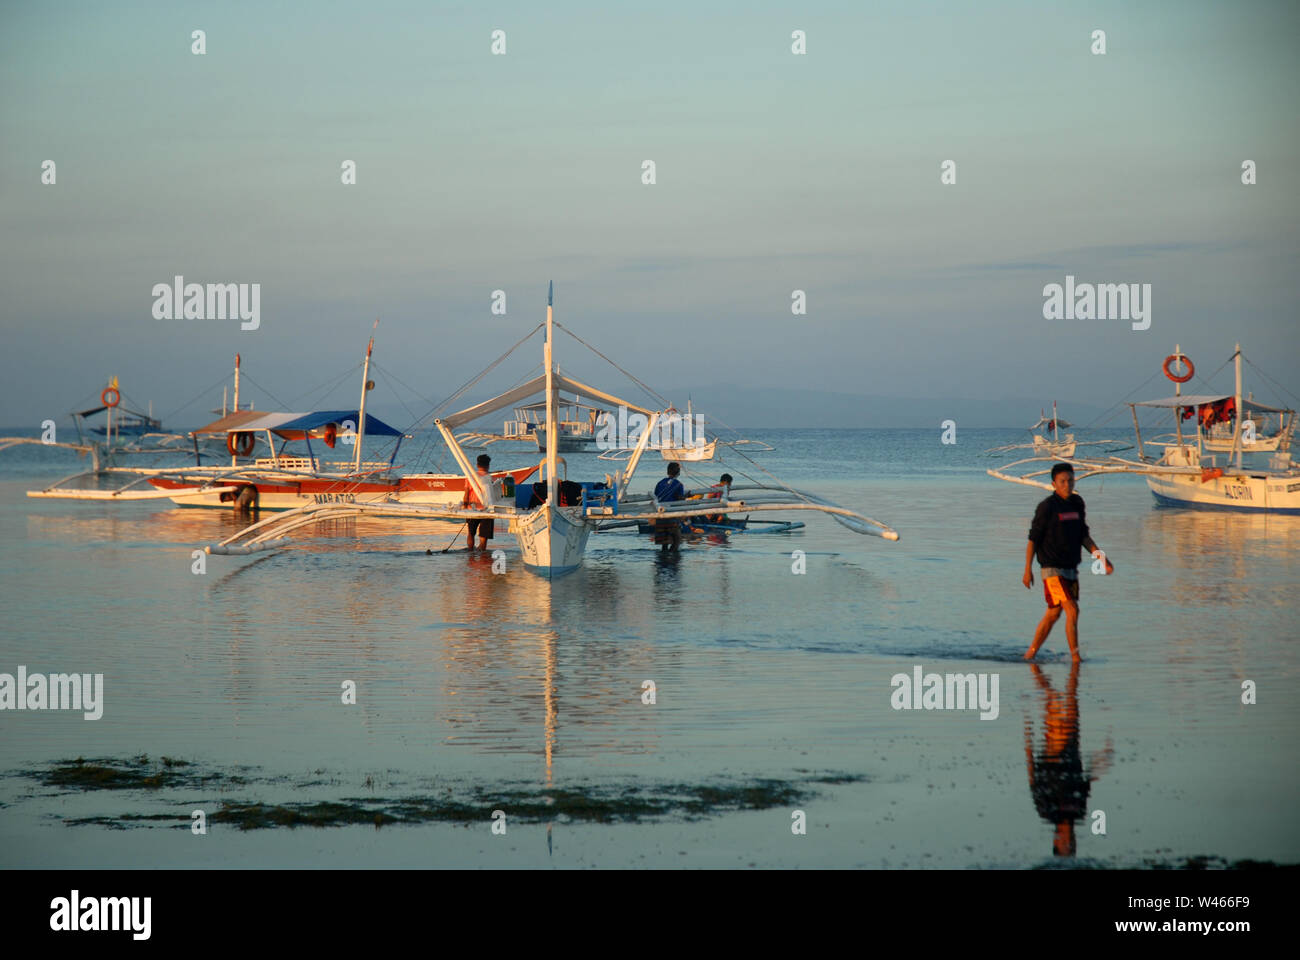 Lever du soleil sur la plage avec des bateaux banca et des pêcheurs à l'île de Panglao, Bohol, Philippines. Banque D'Images